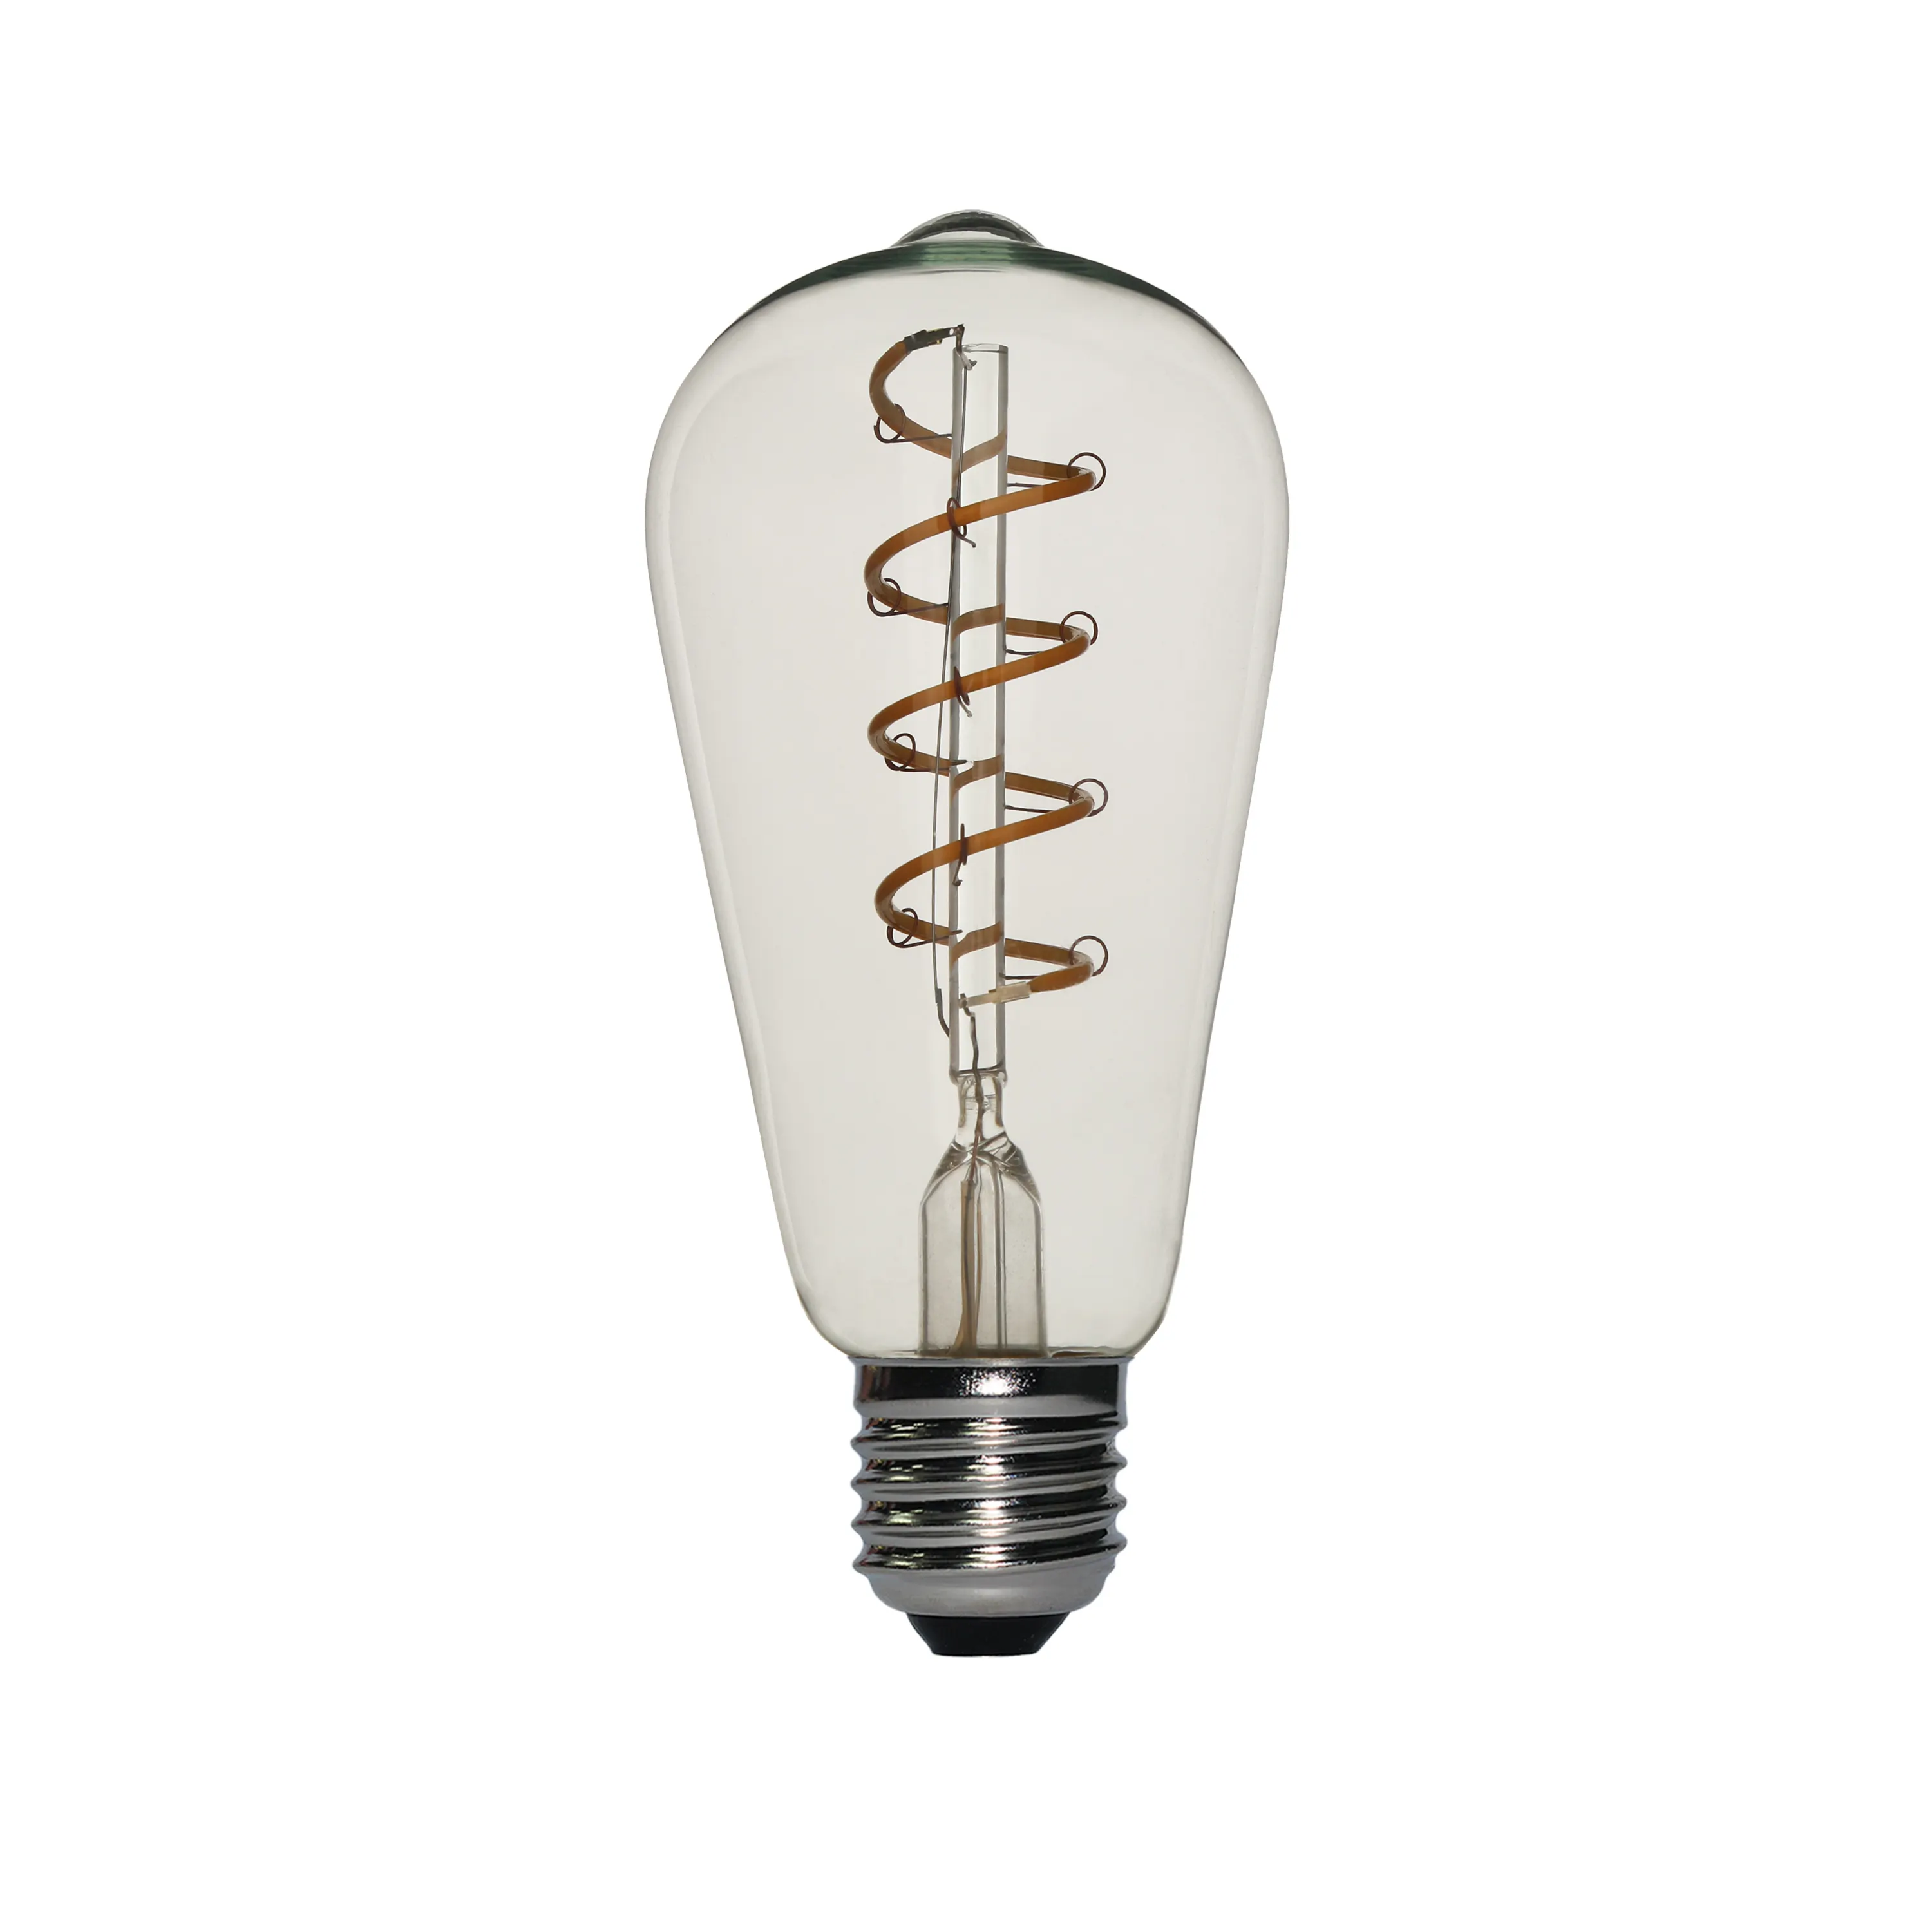 Лампочка ST58 58*130 мм винтажная лампочка Эдисона в старом стиле лампочки для бара/ресторана/рождества